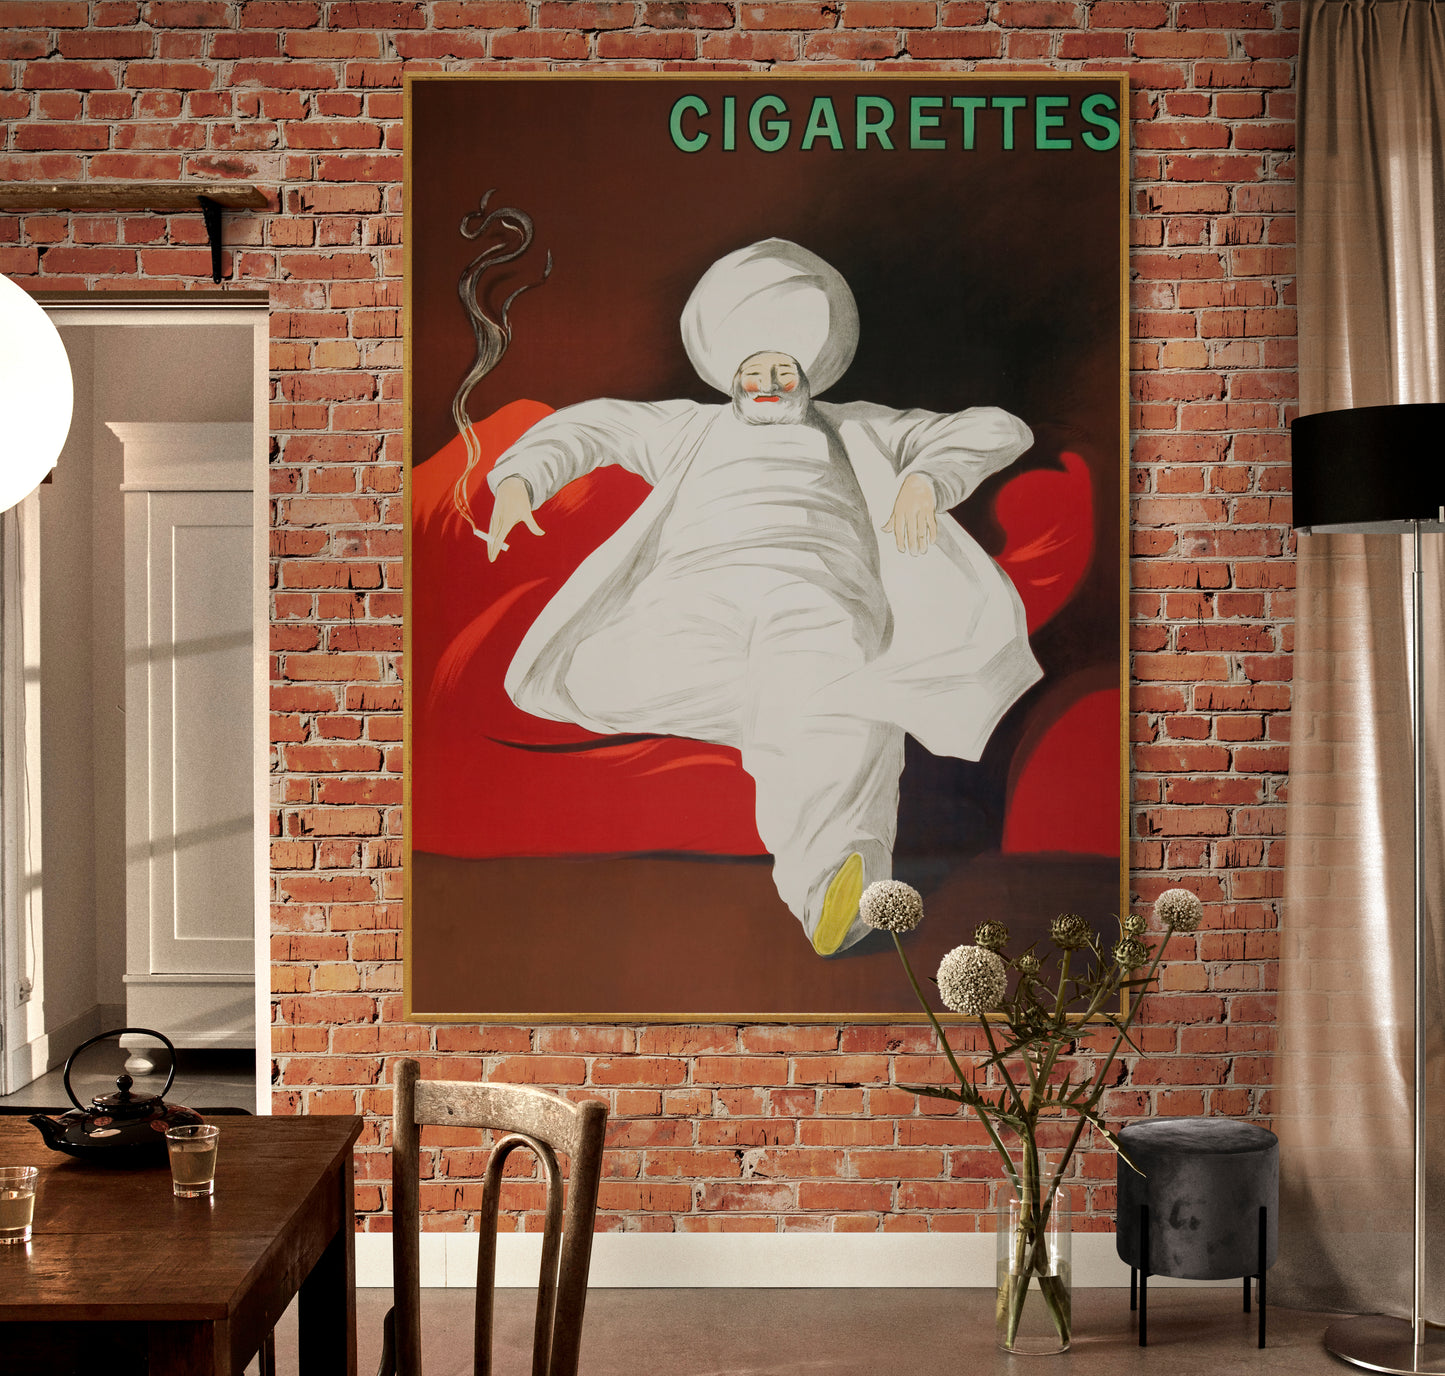 Cigarettes by Leonetto Cappiello